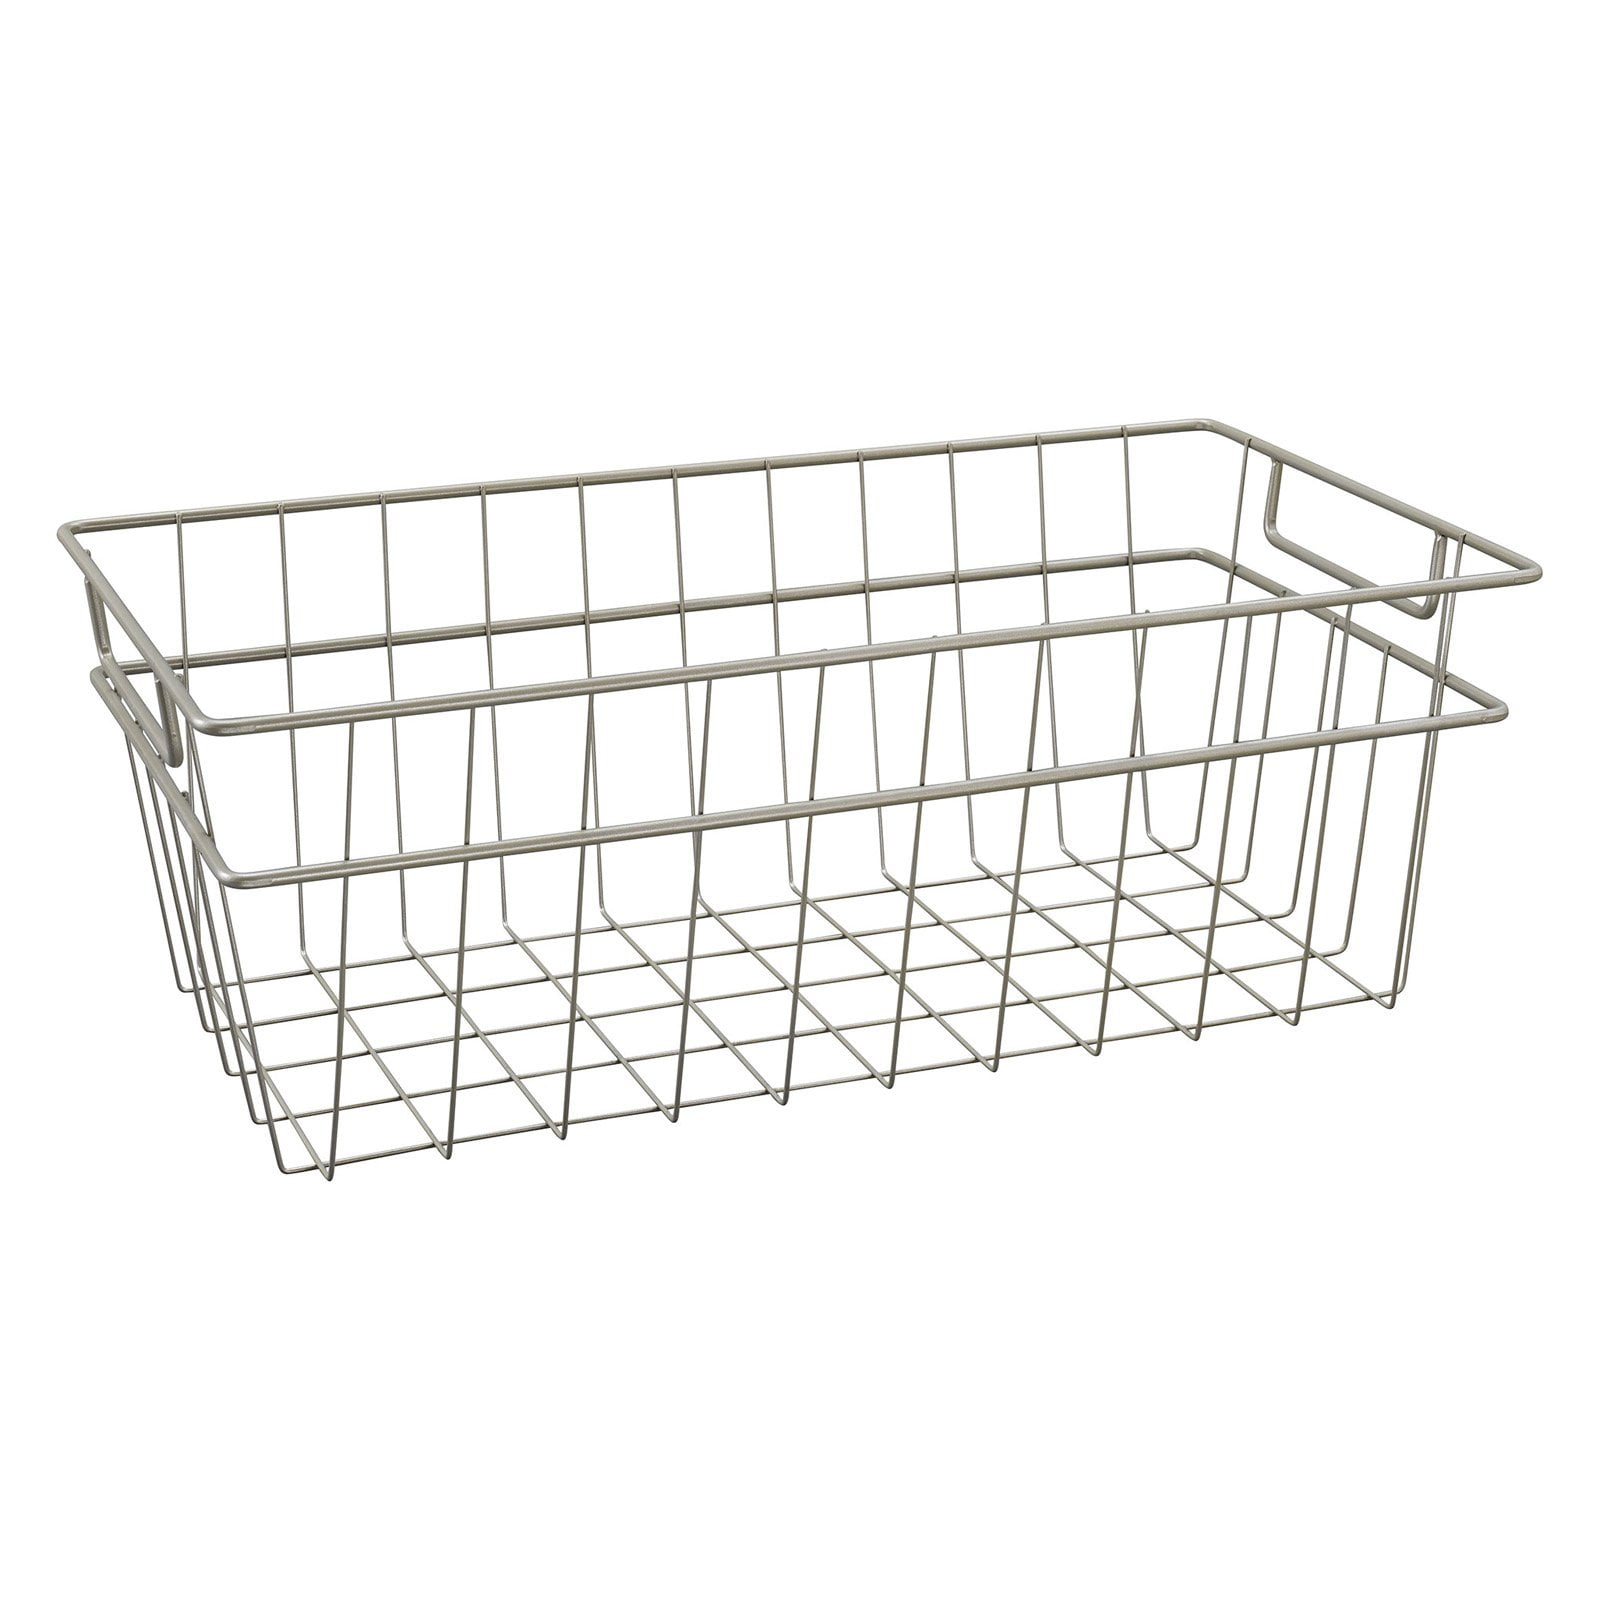 1xHeavy Duty Multi Use Metal Wire Storage Basket/Tray 